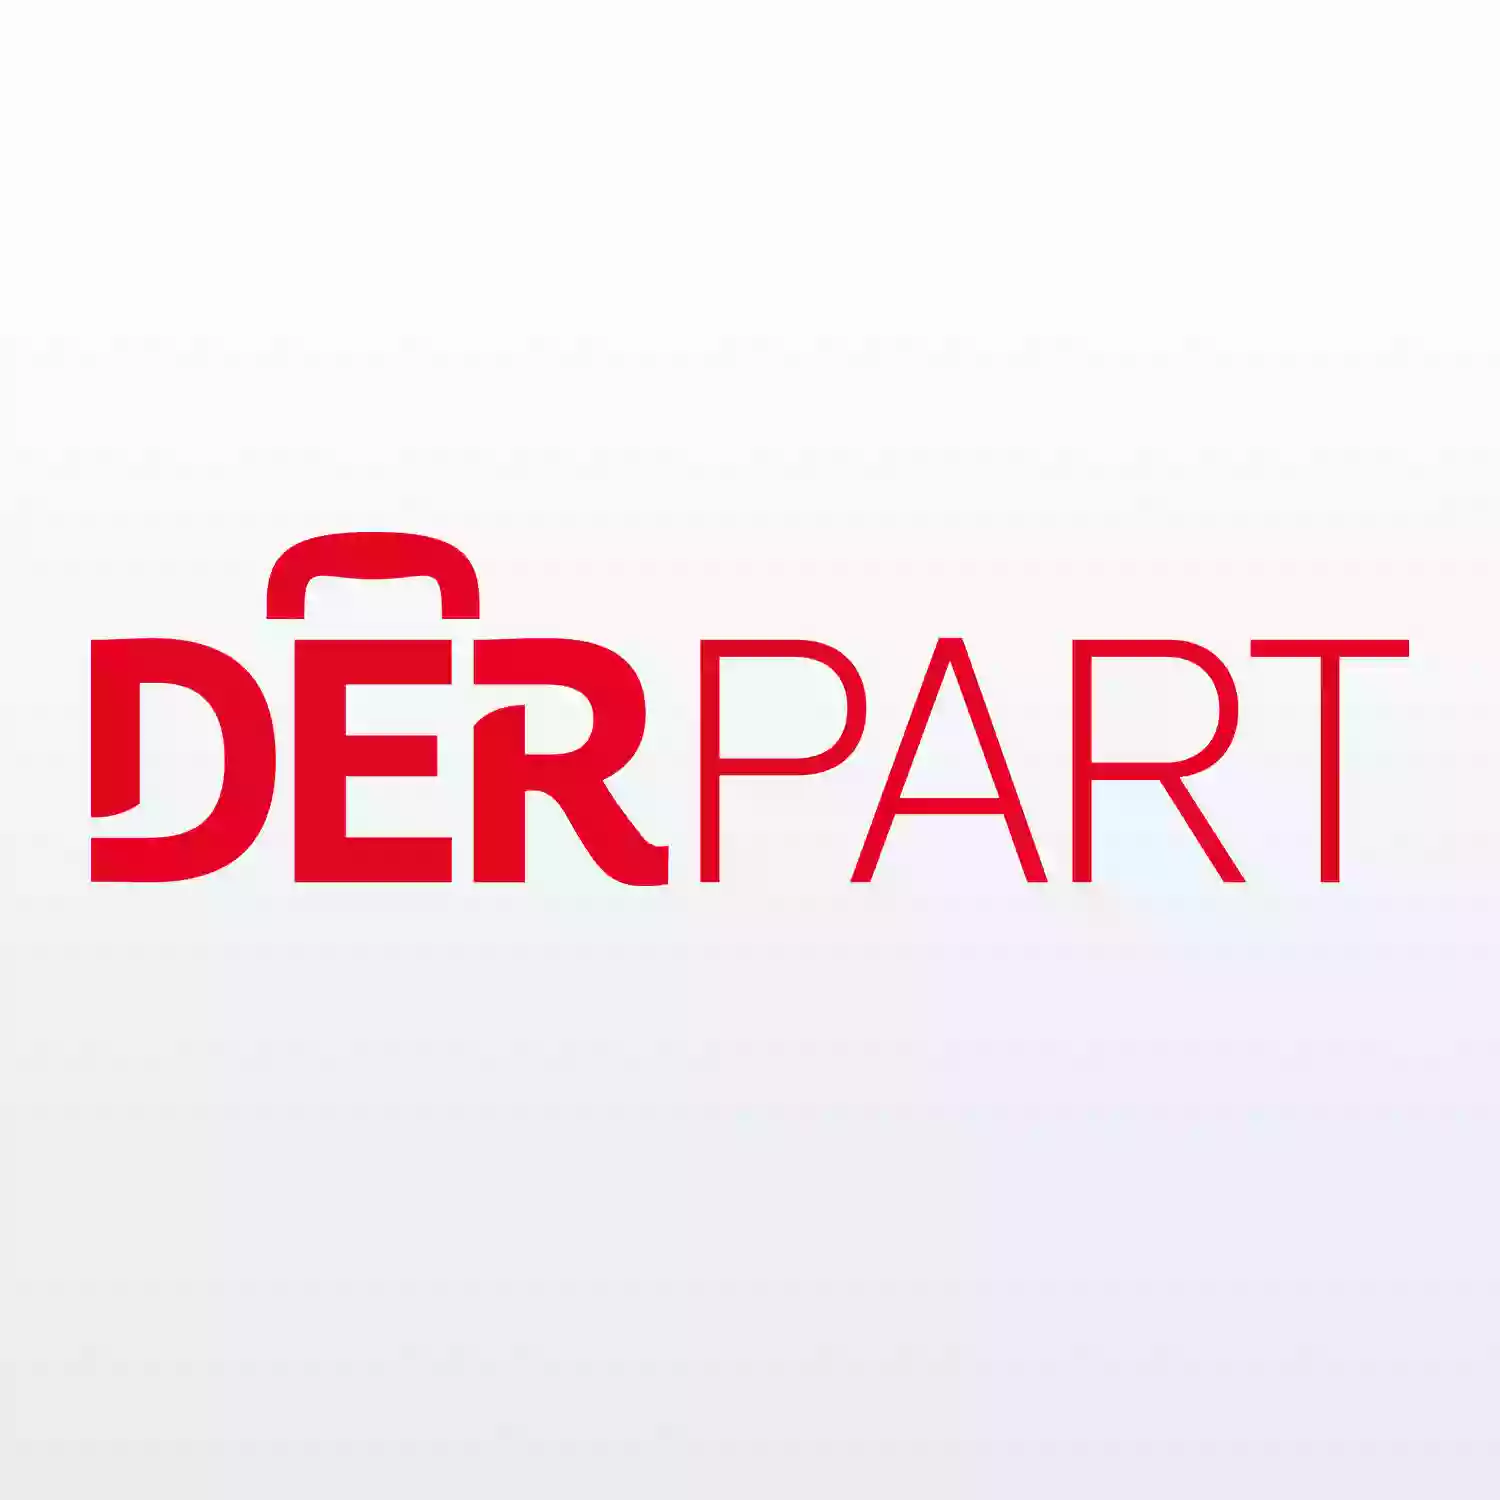 DERPART Reiseladen Memmingen, ein Unternehmen der NettReisen GmbH